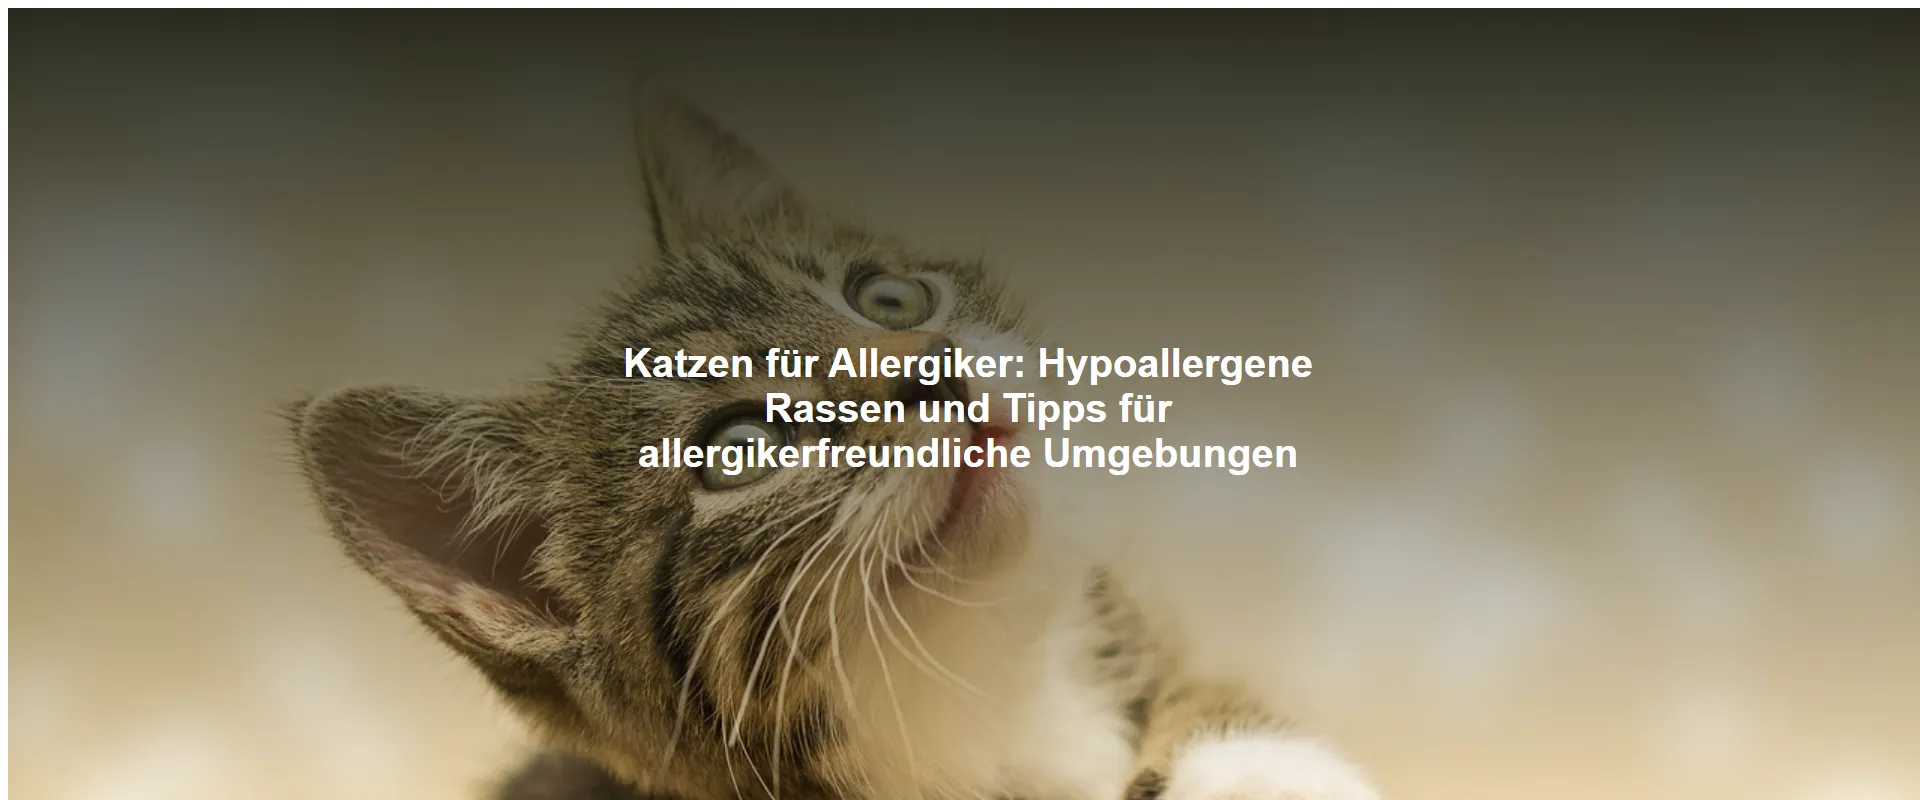 Katzen für Allergiker – Hypoallergene Rassen und Tipps für allergikerfreundliche Umgebungen